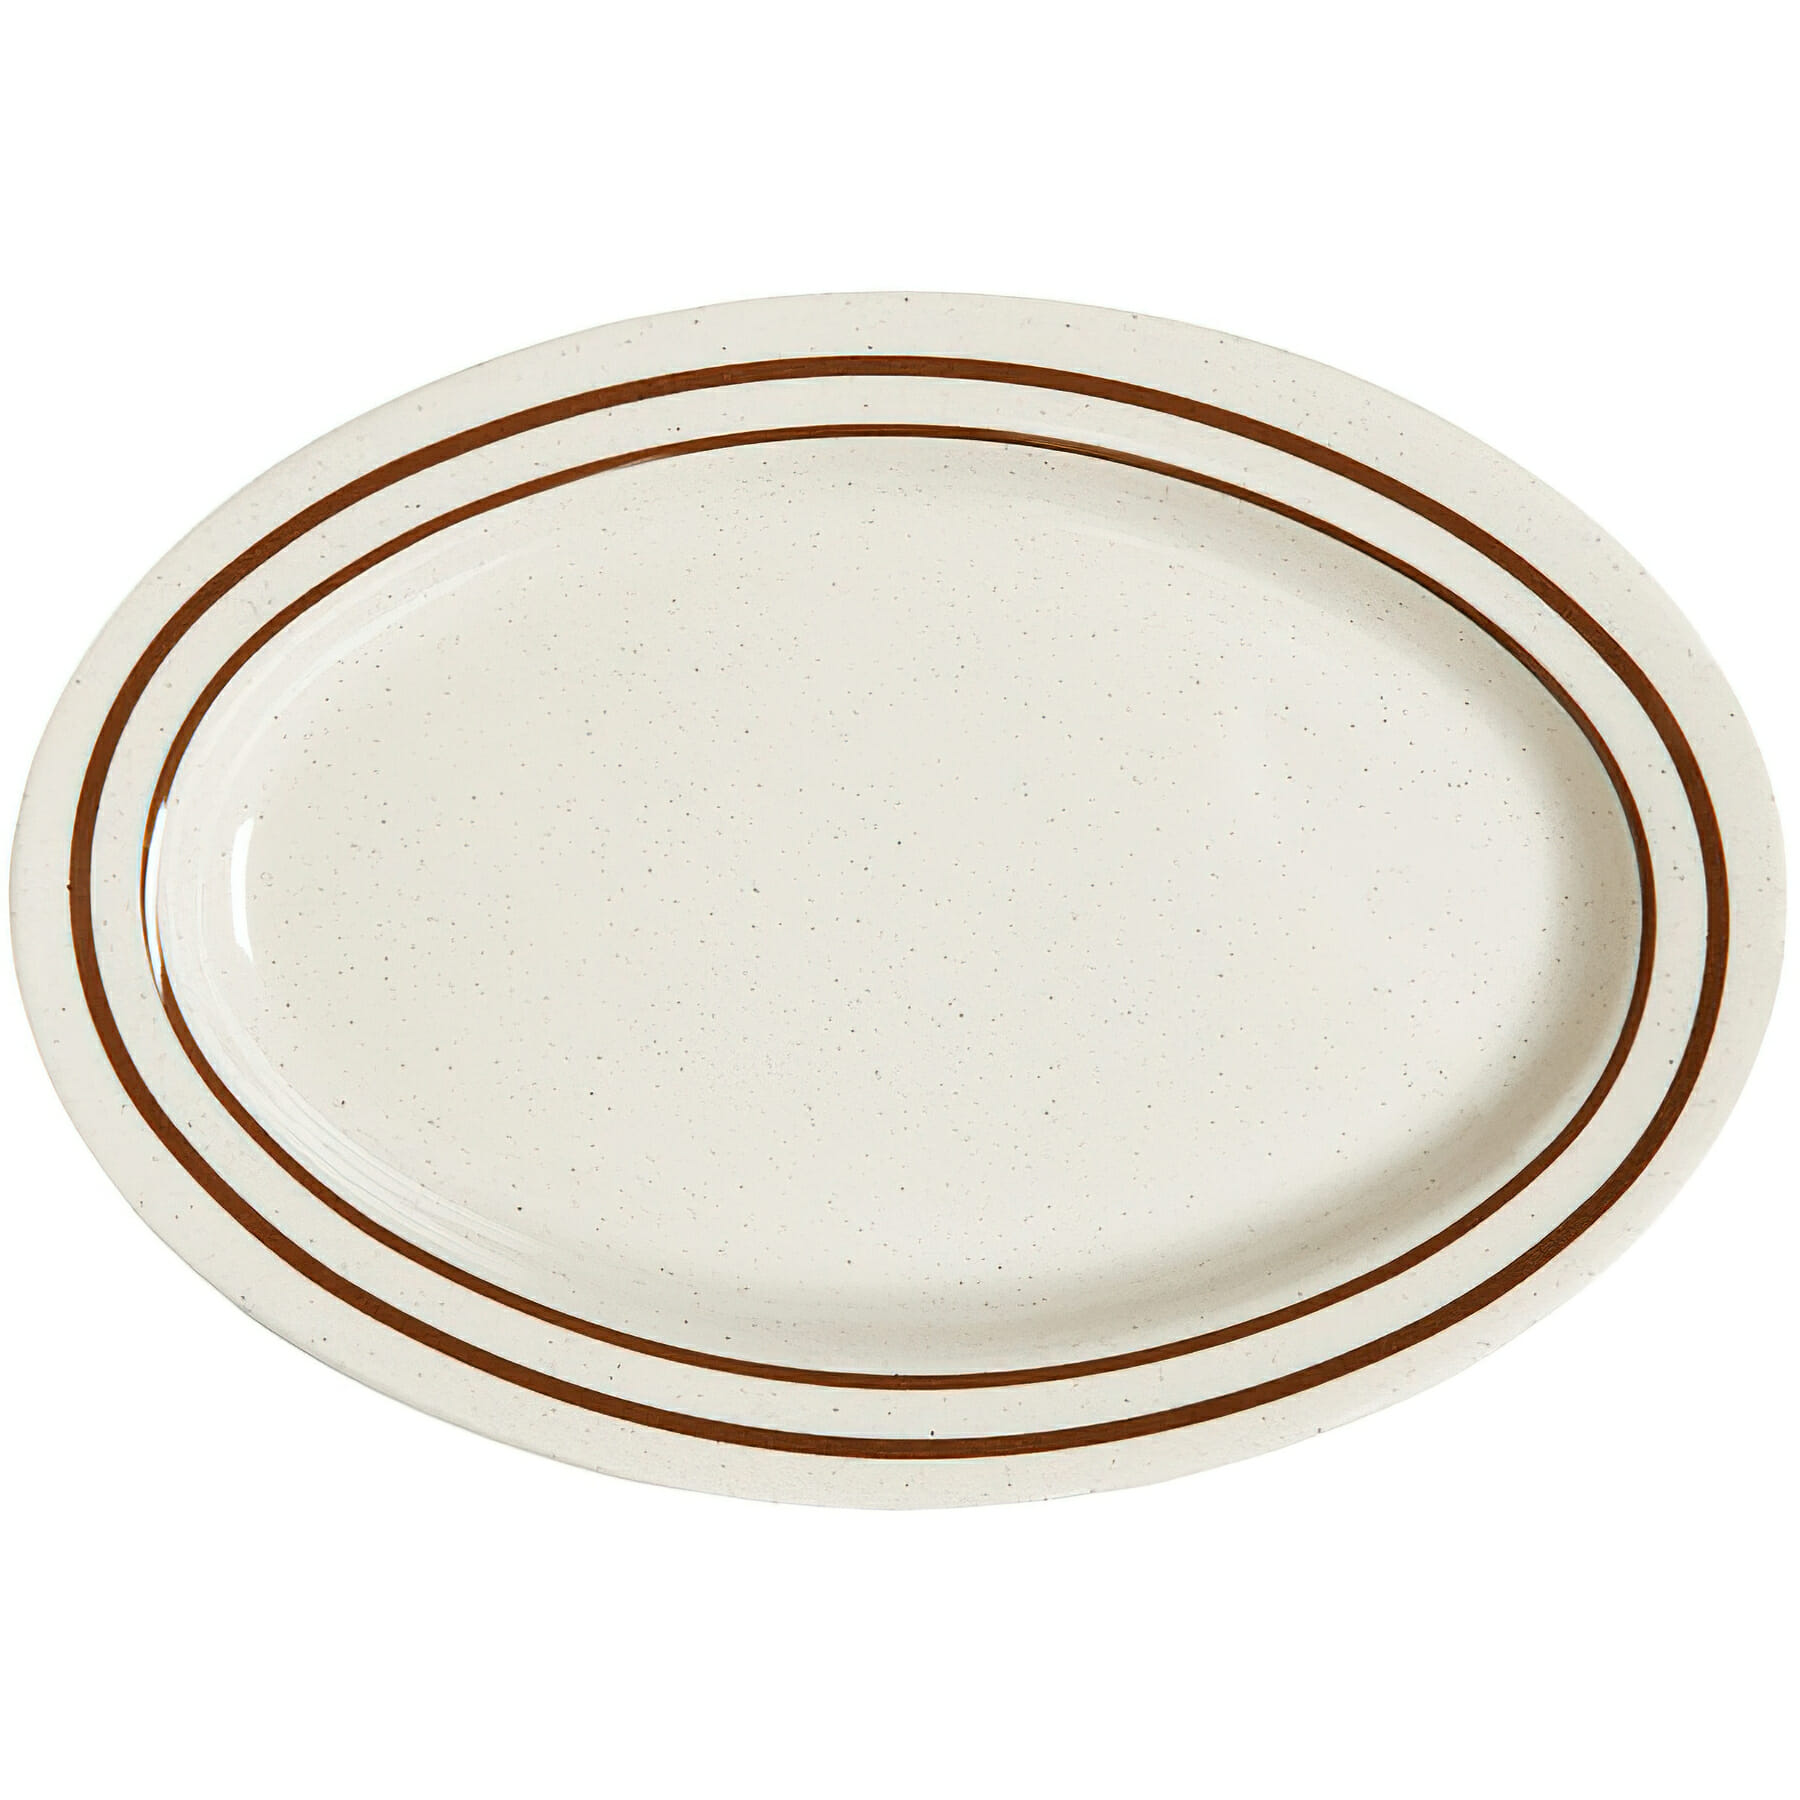 12" x 9" Oval Platter, 1" Deep